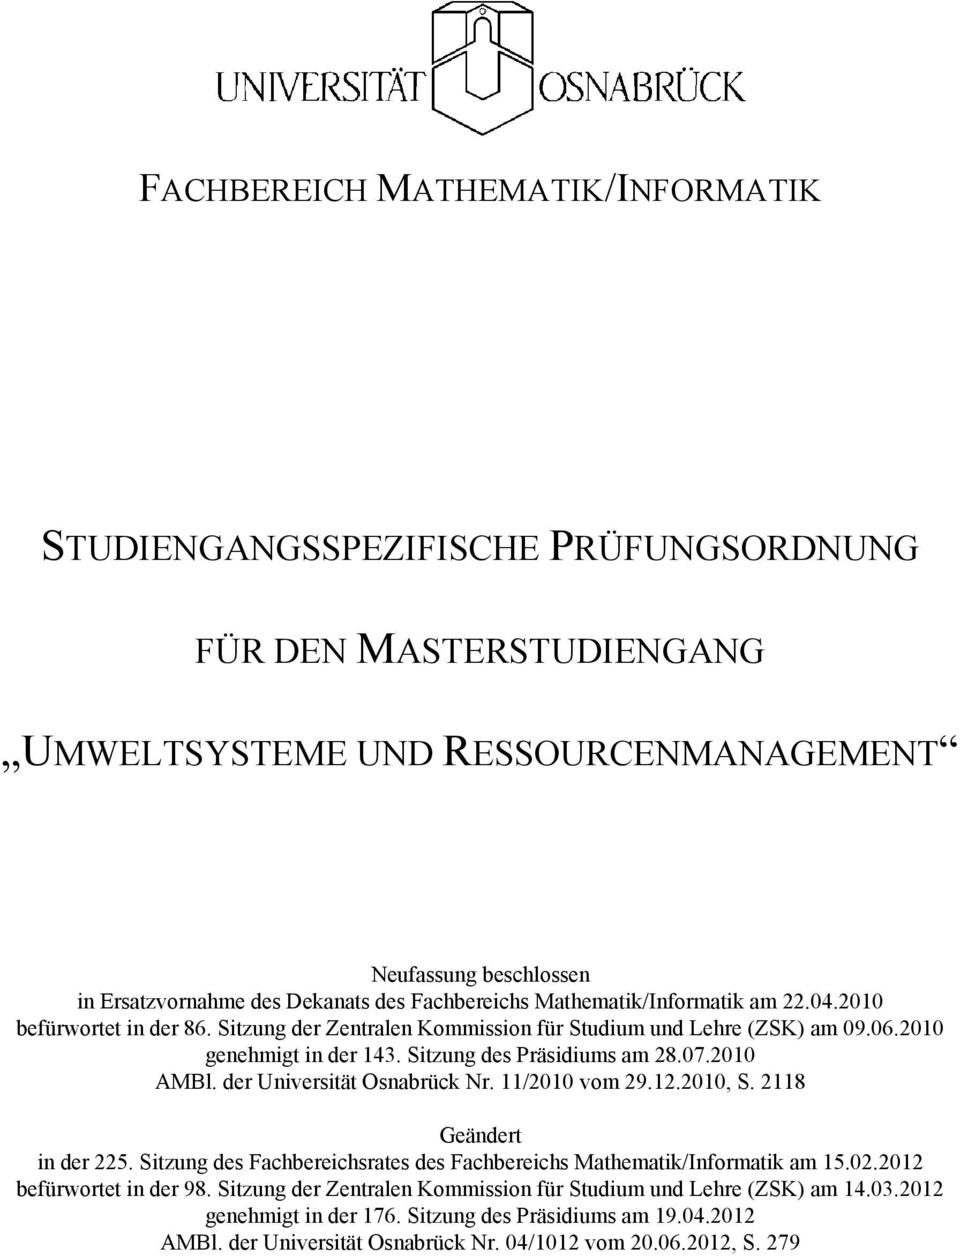 07.2010 AMBl. der Universität Osnabrück Nr. 11/2010 vom 29.12.2010, S. 2118 Geändert in der 225. Sitzung des Fachbereichsrates des Fachbereichs Mathematik/Informatik am 15.02.